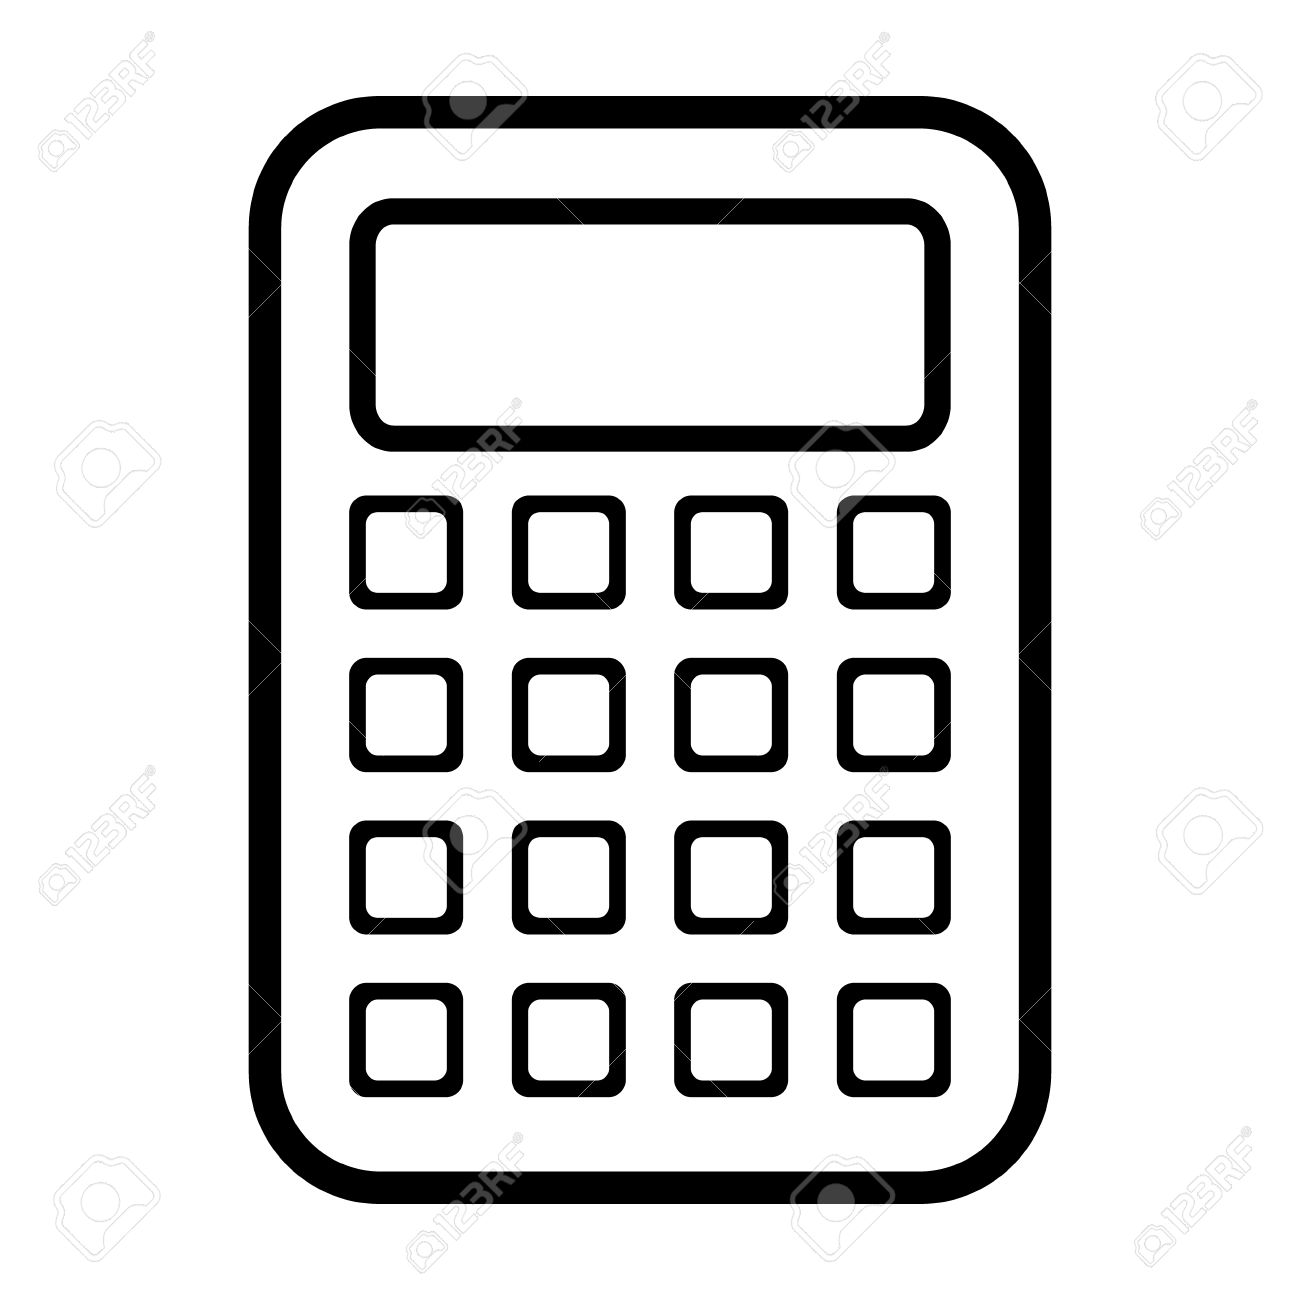 Calculator Icon Black And White